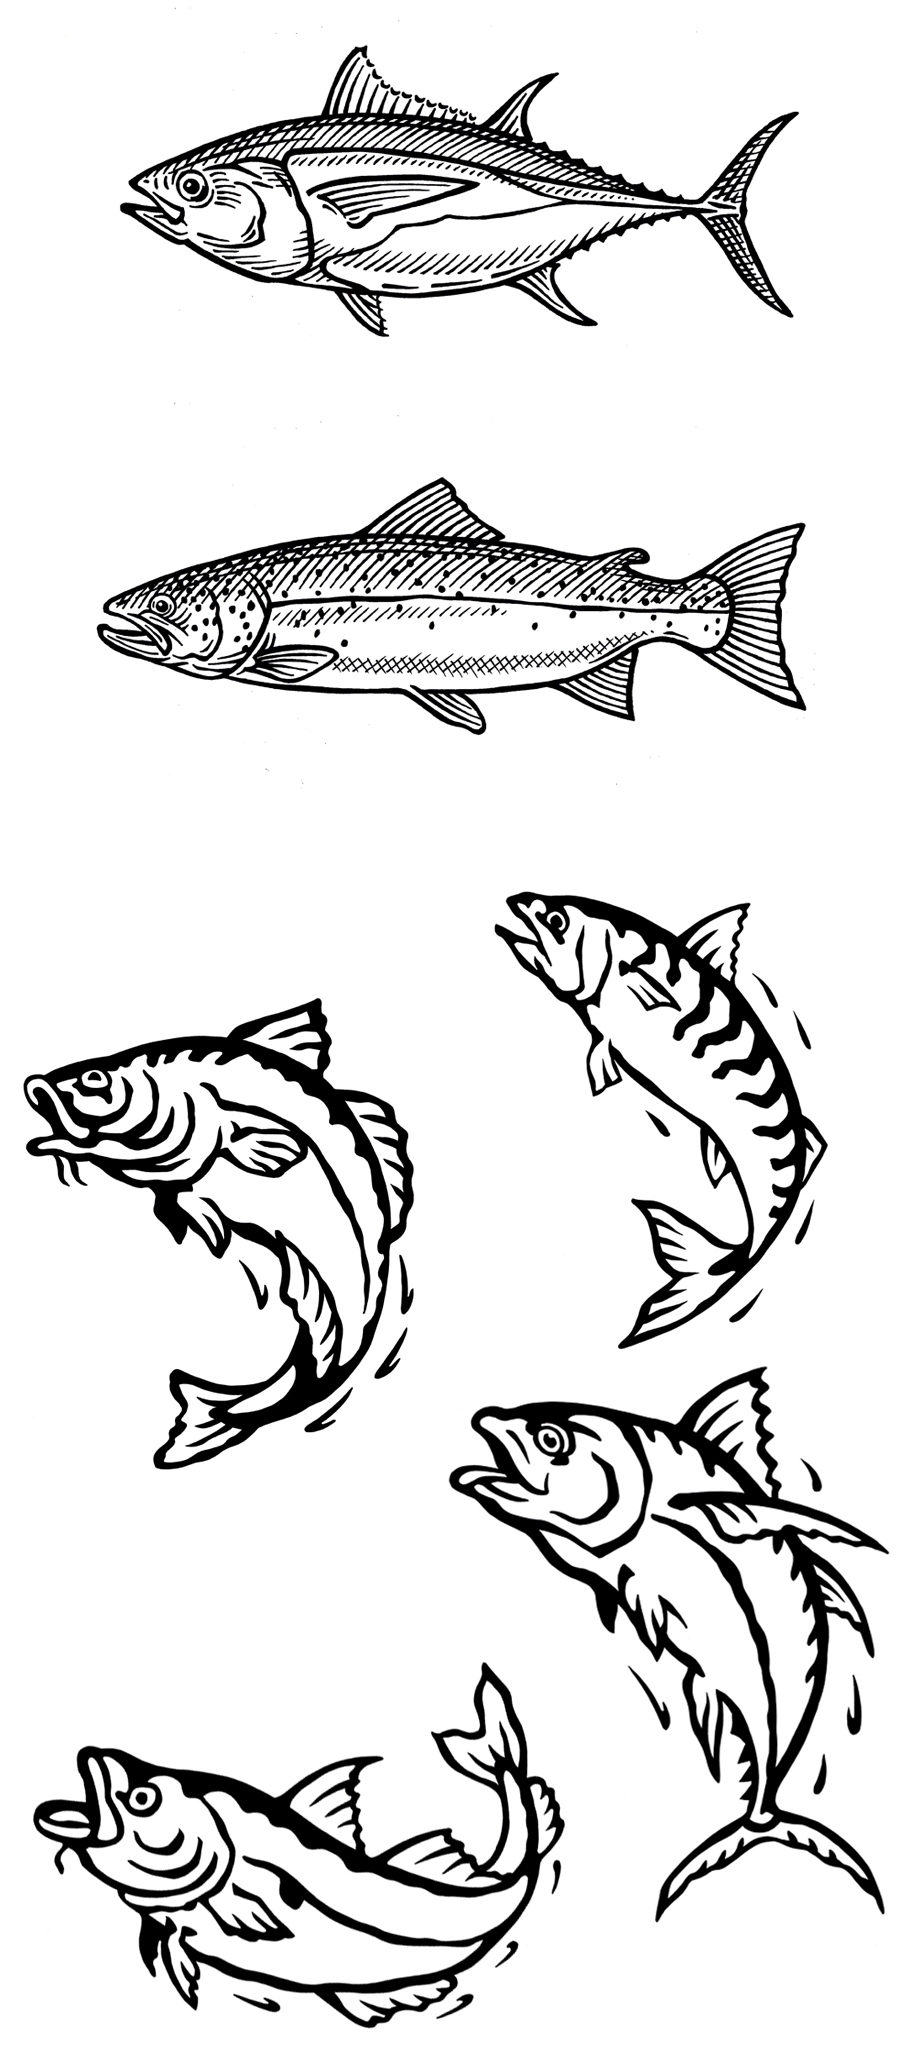 Fish engraving, woodcut